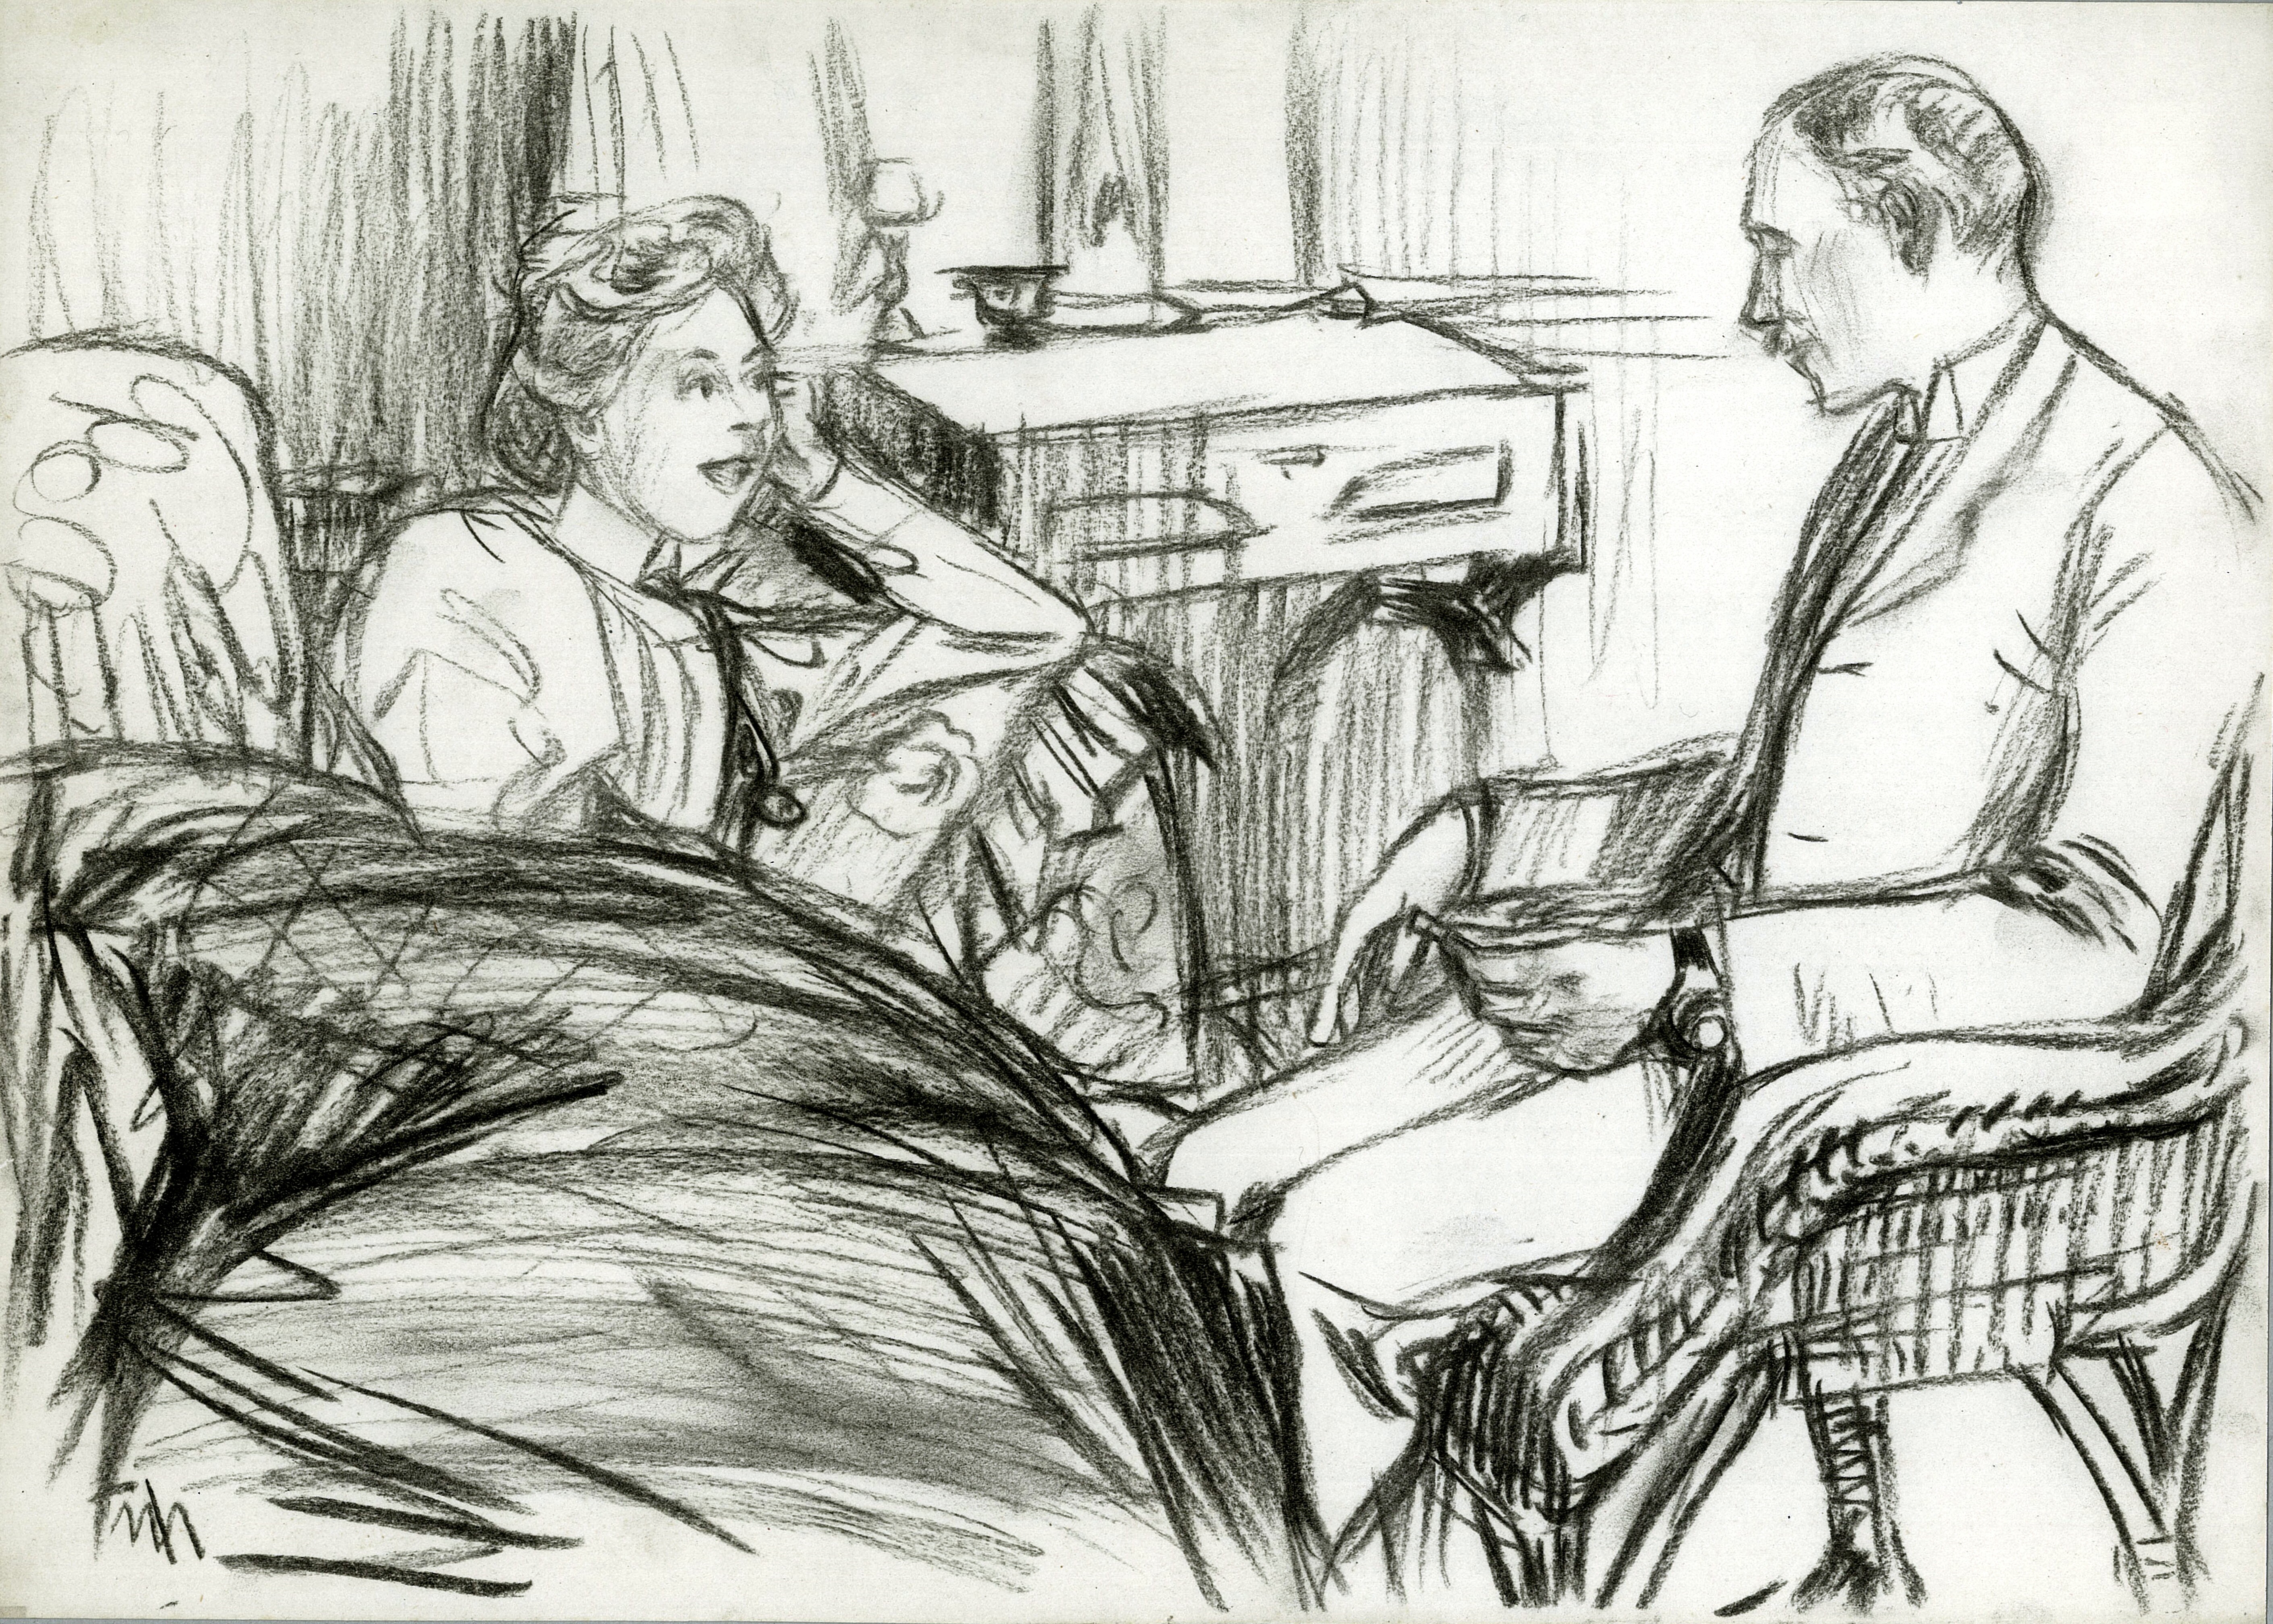 Claire Martini, Ehefrau des Künstlers Johannes Martini, im Gespräch mit Wilhelm Prinz zu Stolberg-Wernigerode 1901 in St. Petersburg (Schloß Wernigerode GmbH RR-F)